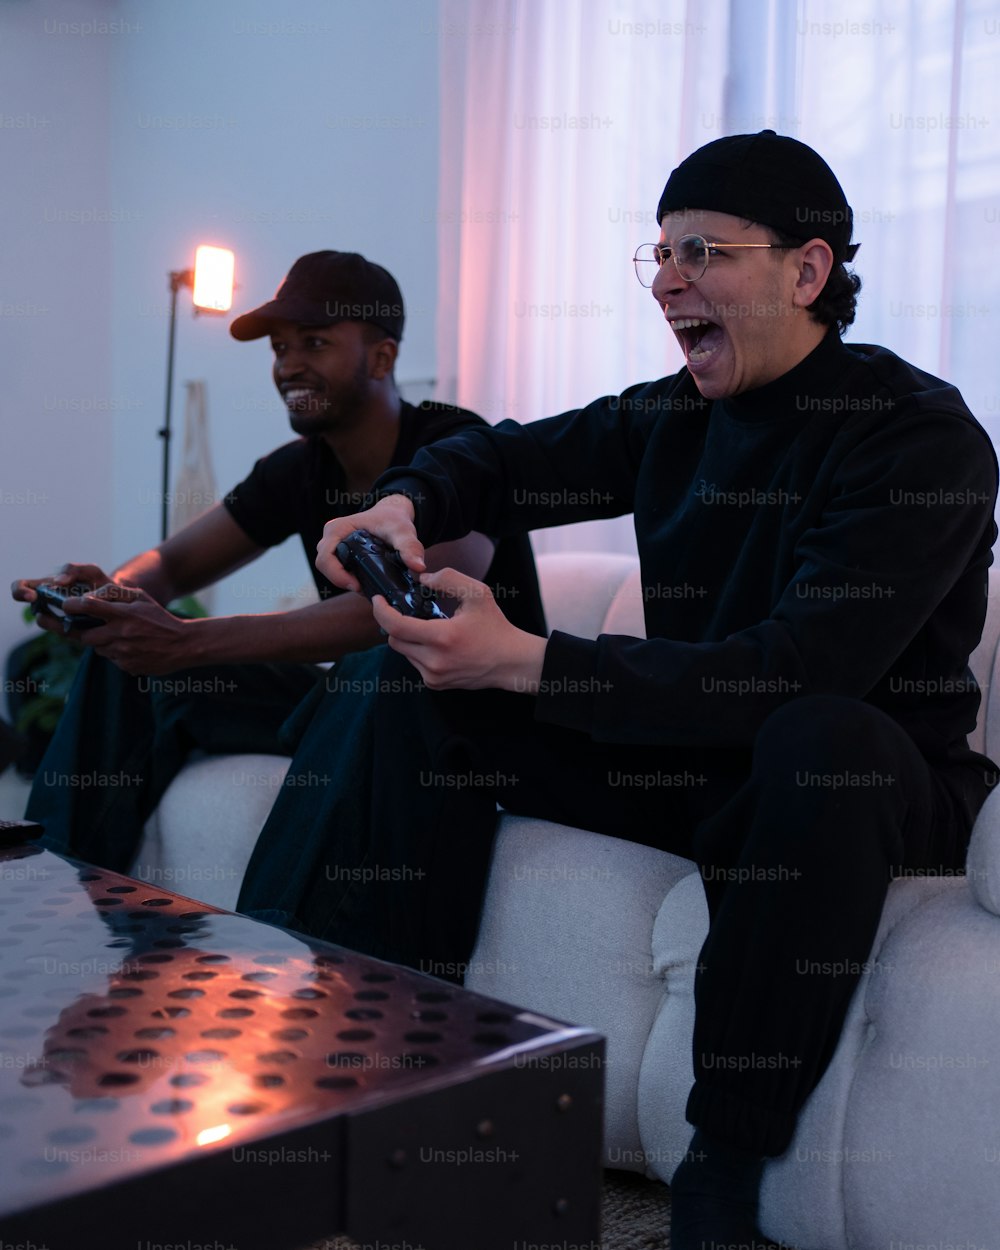 소파에 앉아 비디오 게임을 하는 두 사람